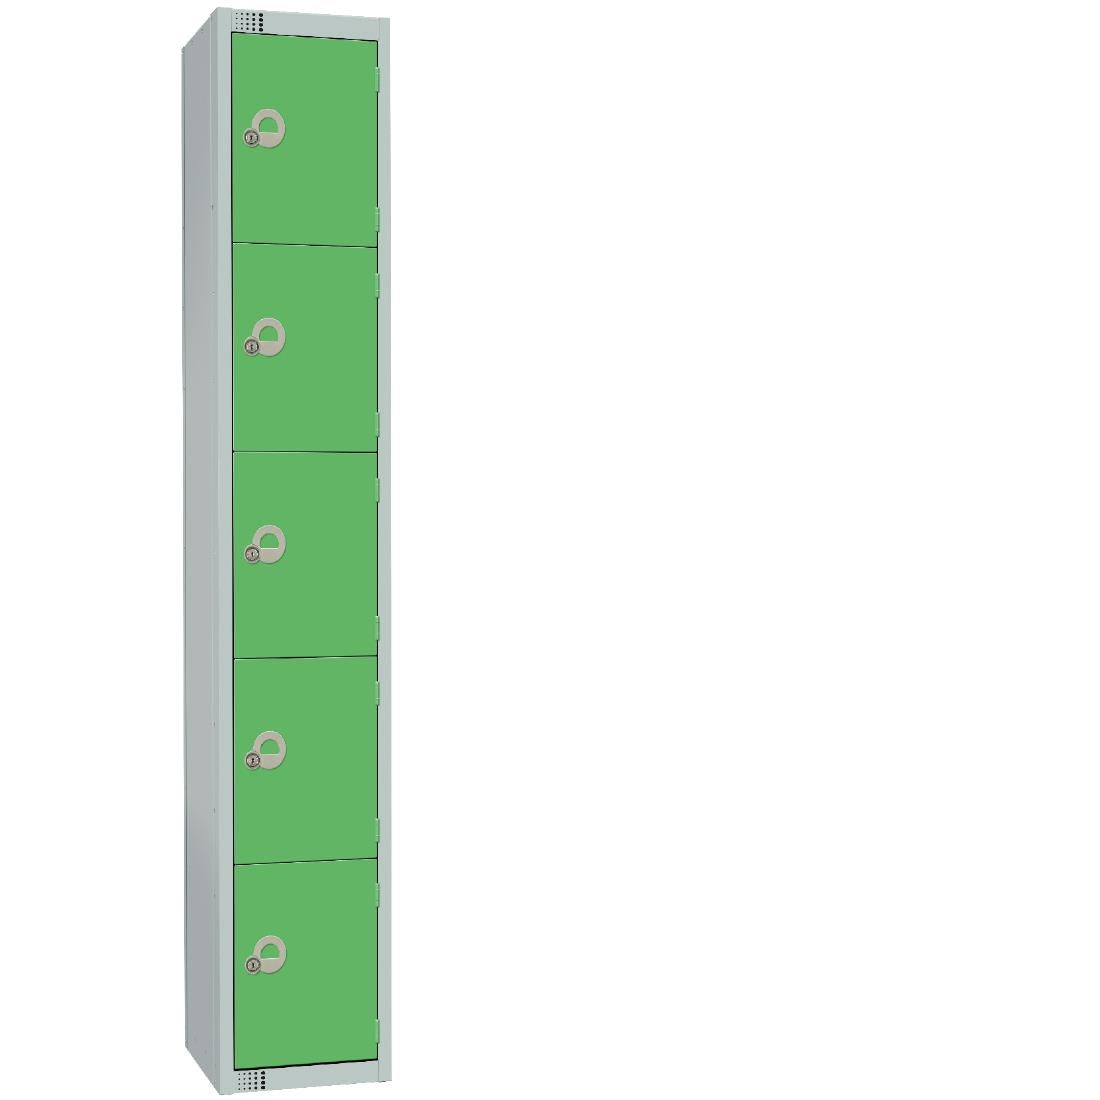 CG619-CLS Elite Five Door Manual Combination Locker Locker Green with Sloping Top JD Catering Equipment Solutions Ltd